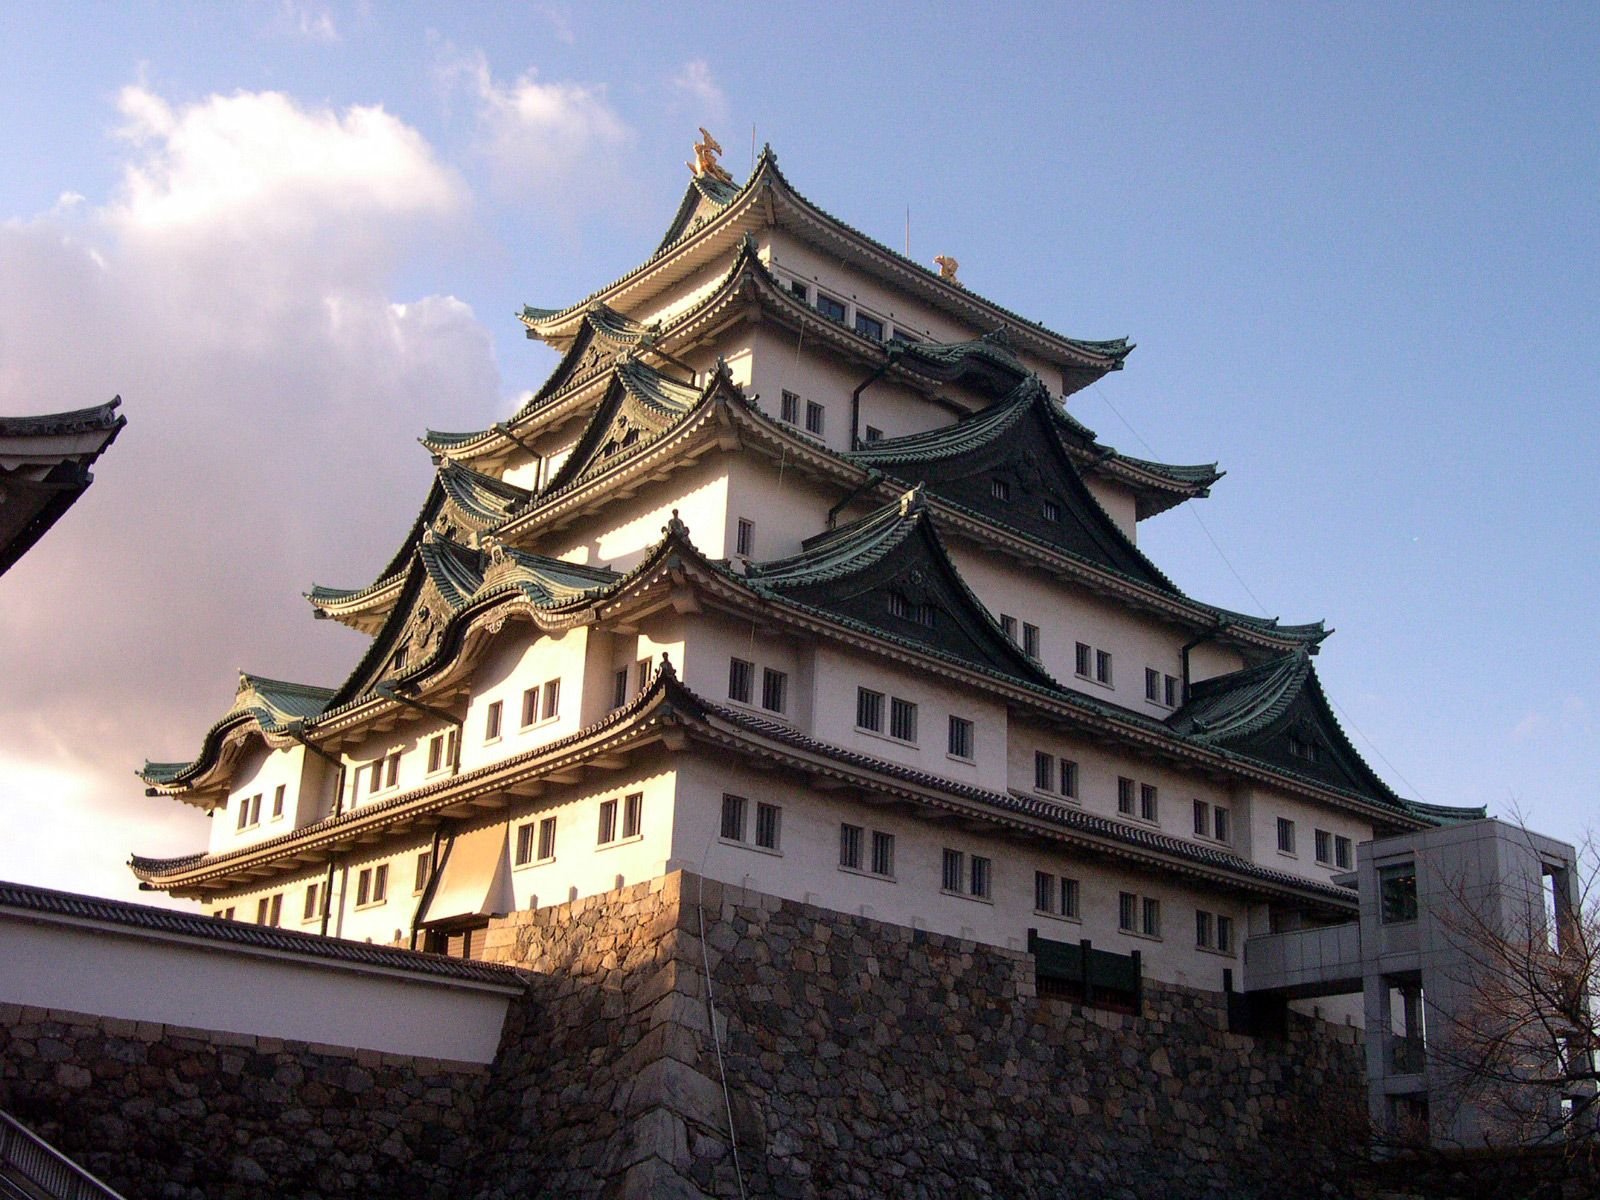 Китайские дома видео. Архитектура Японии Минка. Архитектура Джапаниз. Минка дом в Японии. Японская архитектура (Минка, пагода).